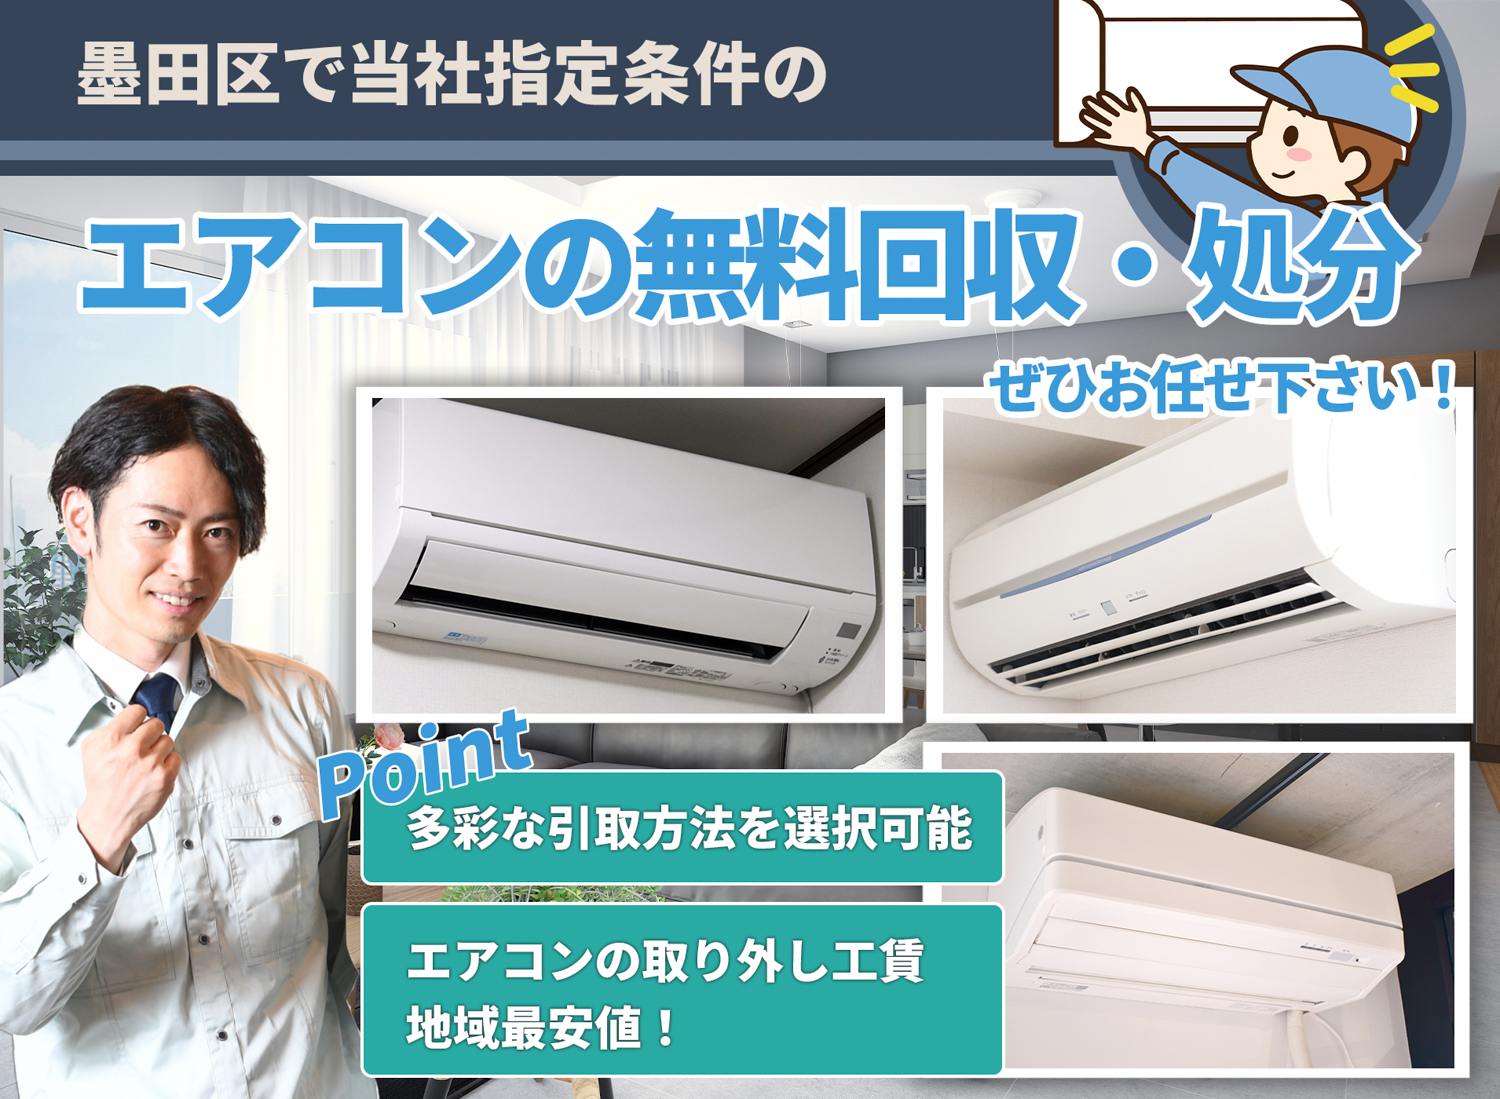 墨田区で丁寧に「お客様と寄り添う」エアコン無料回収処分隊のエアコン無料回収サービス